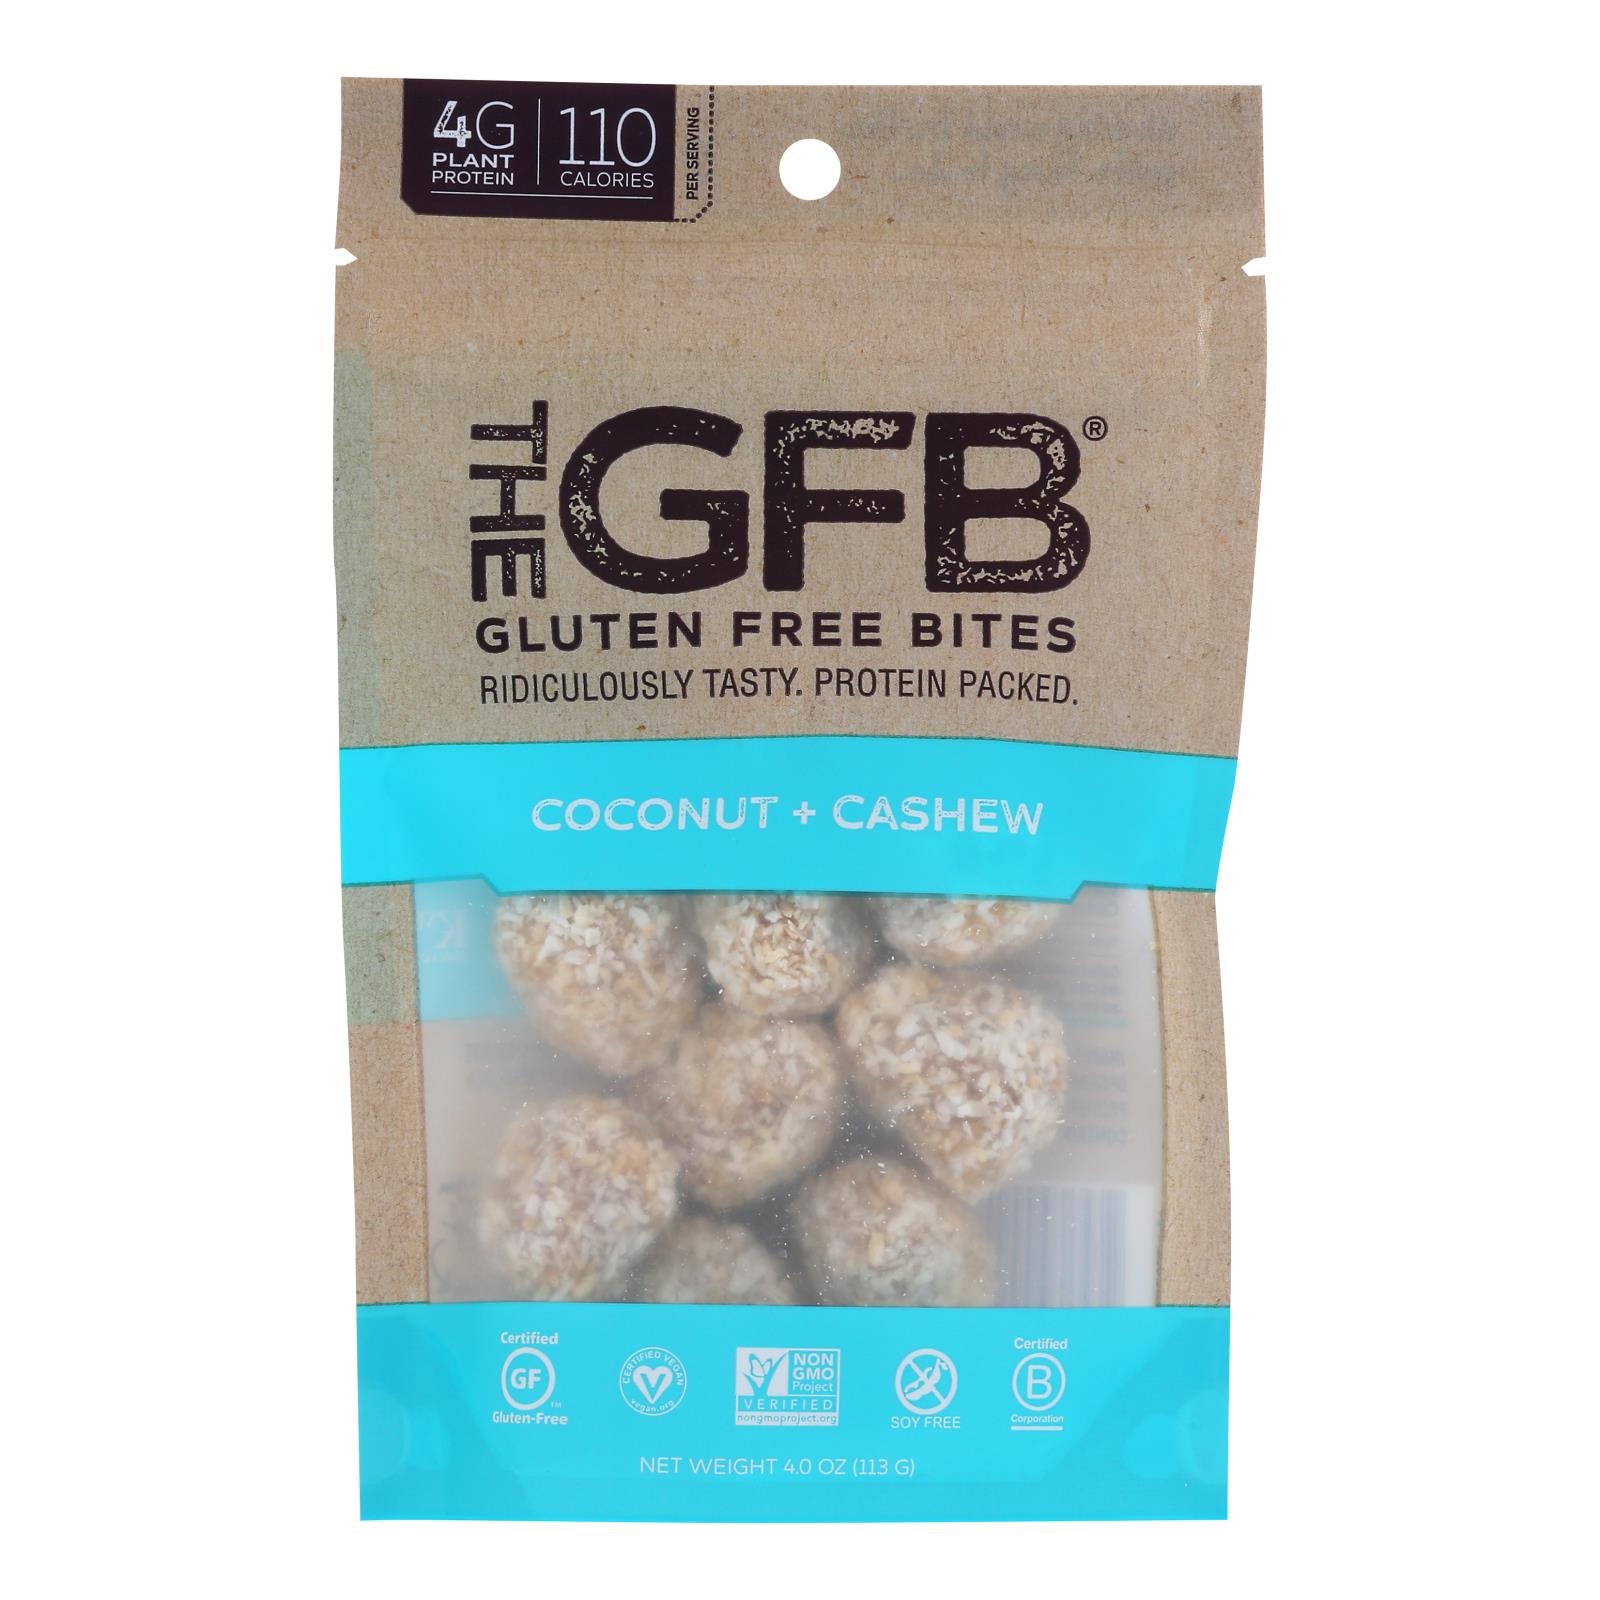 Gfb Nutrition Bites  - Case Of 6 - 4 Oz